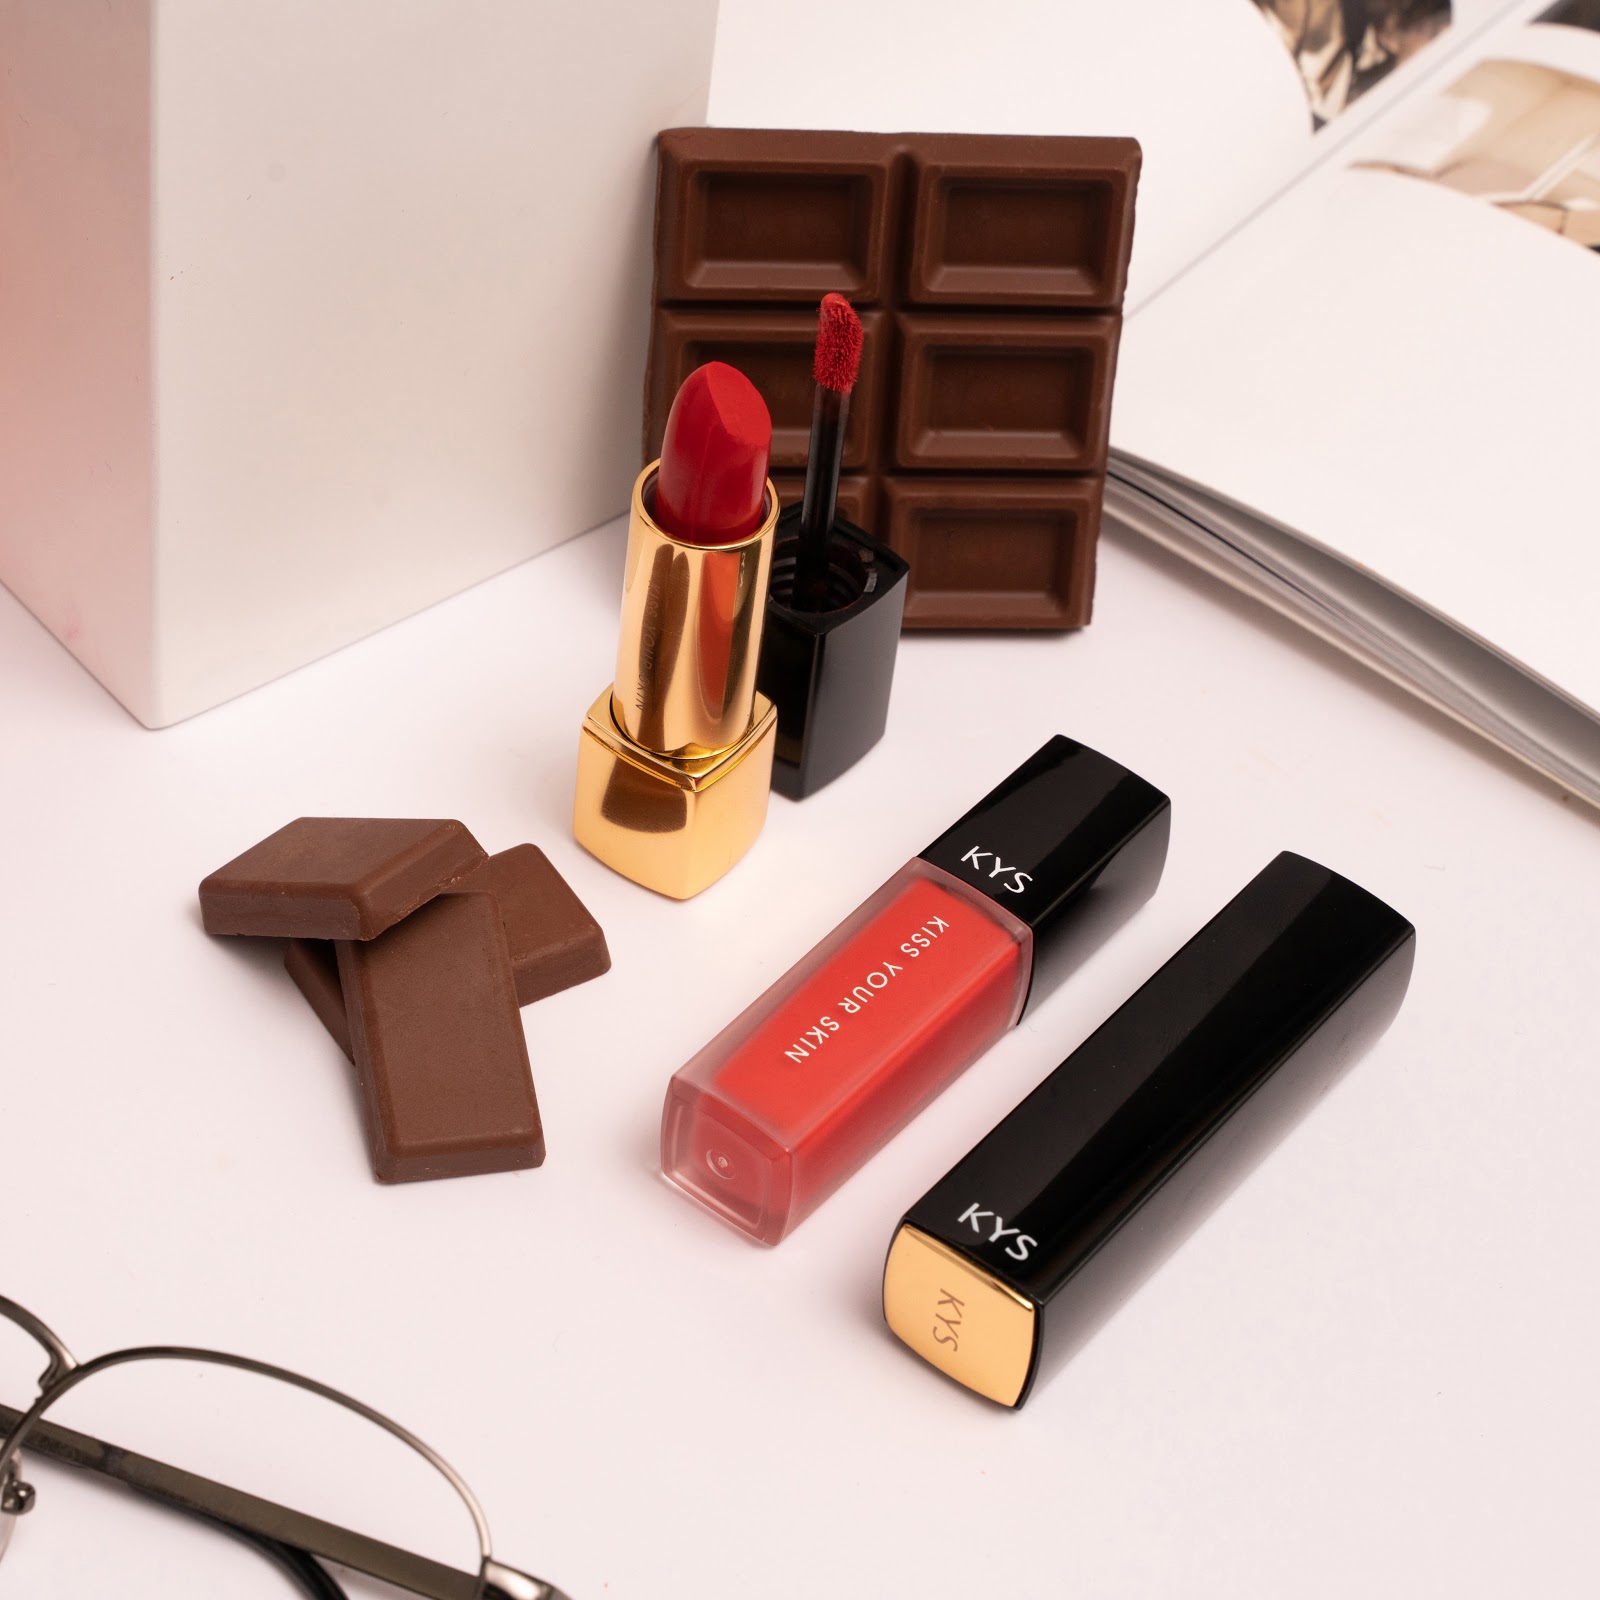 KYS Chocolate lipsticks